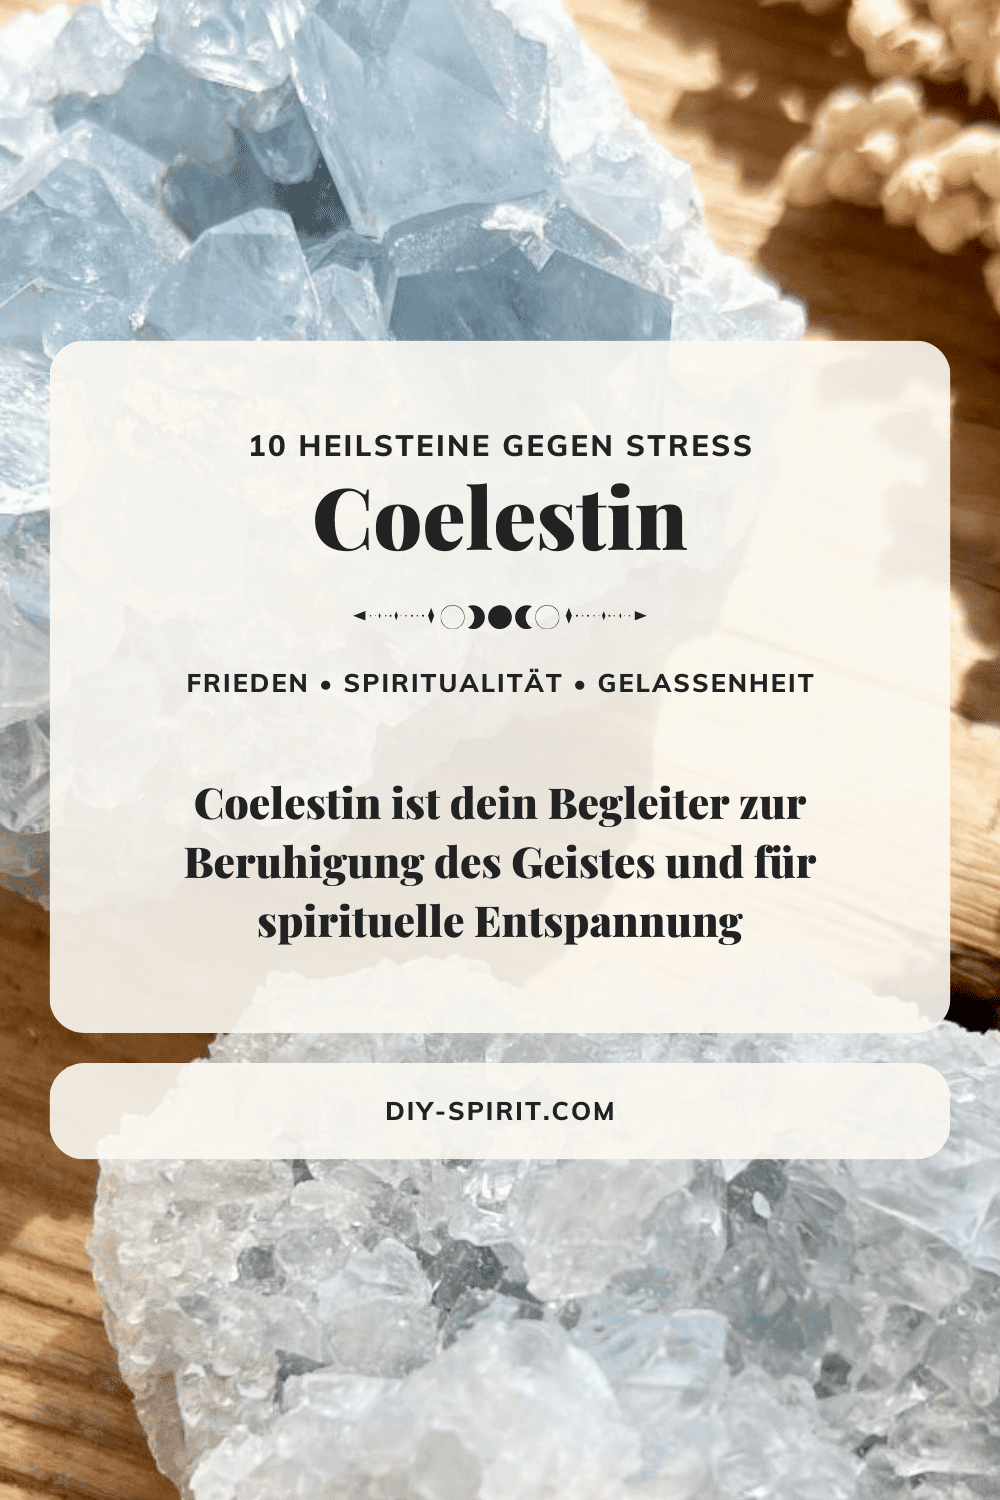 Coelestin - Heilstein gegen Stress